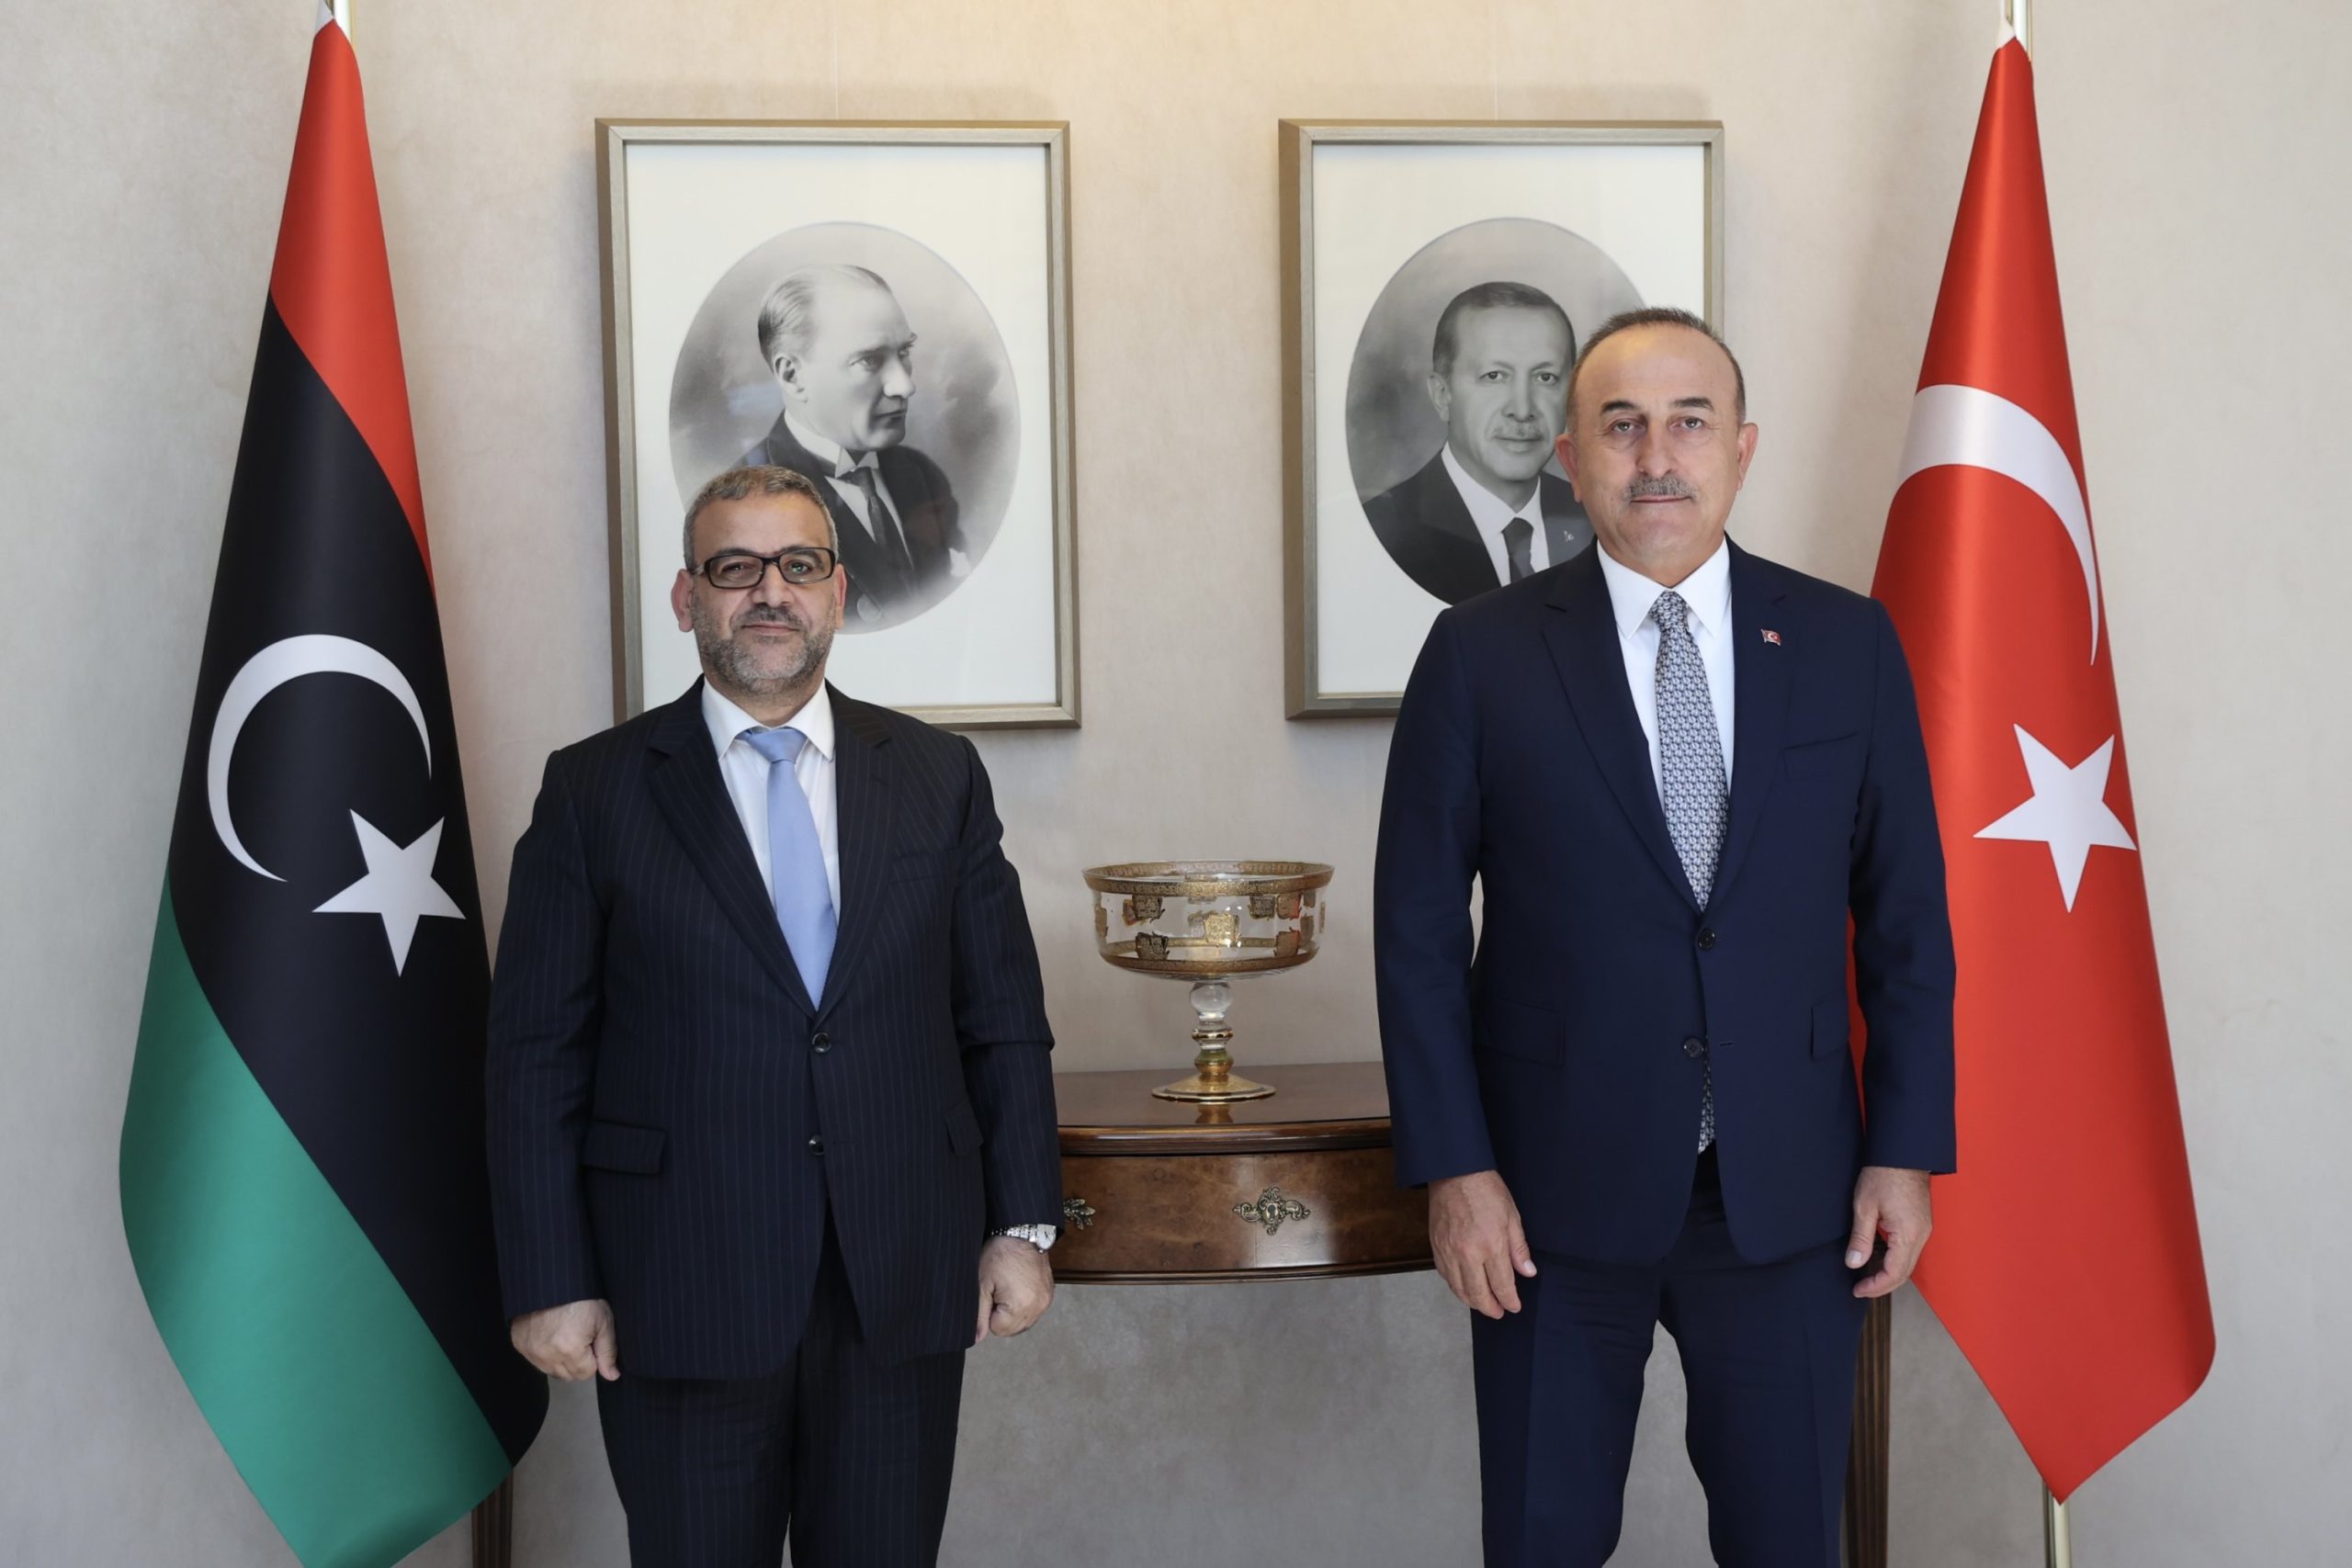 Υπουργός Μεταφορών της Λιβύης: «Η Τουρκία έχει προτεραιότητα στην ενέργεια της Λιβύης»